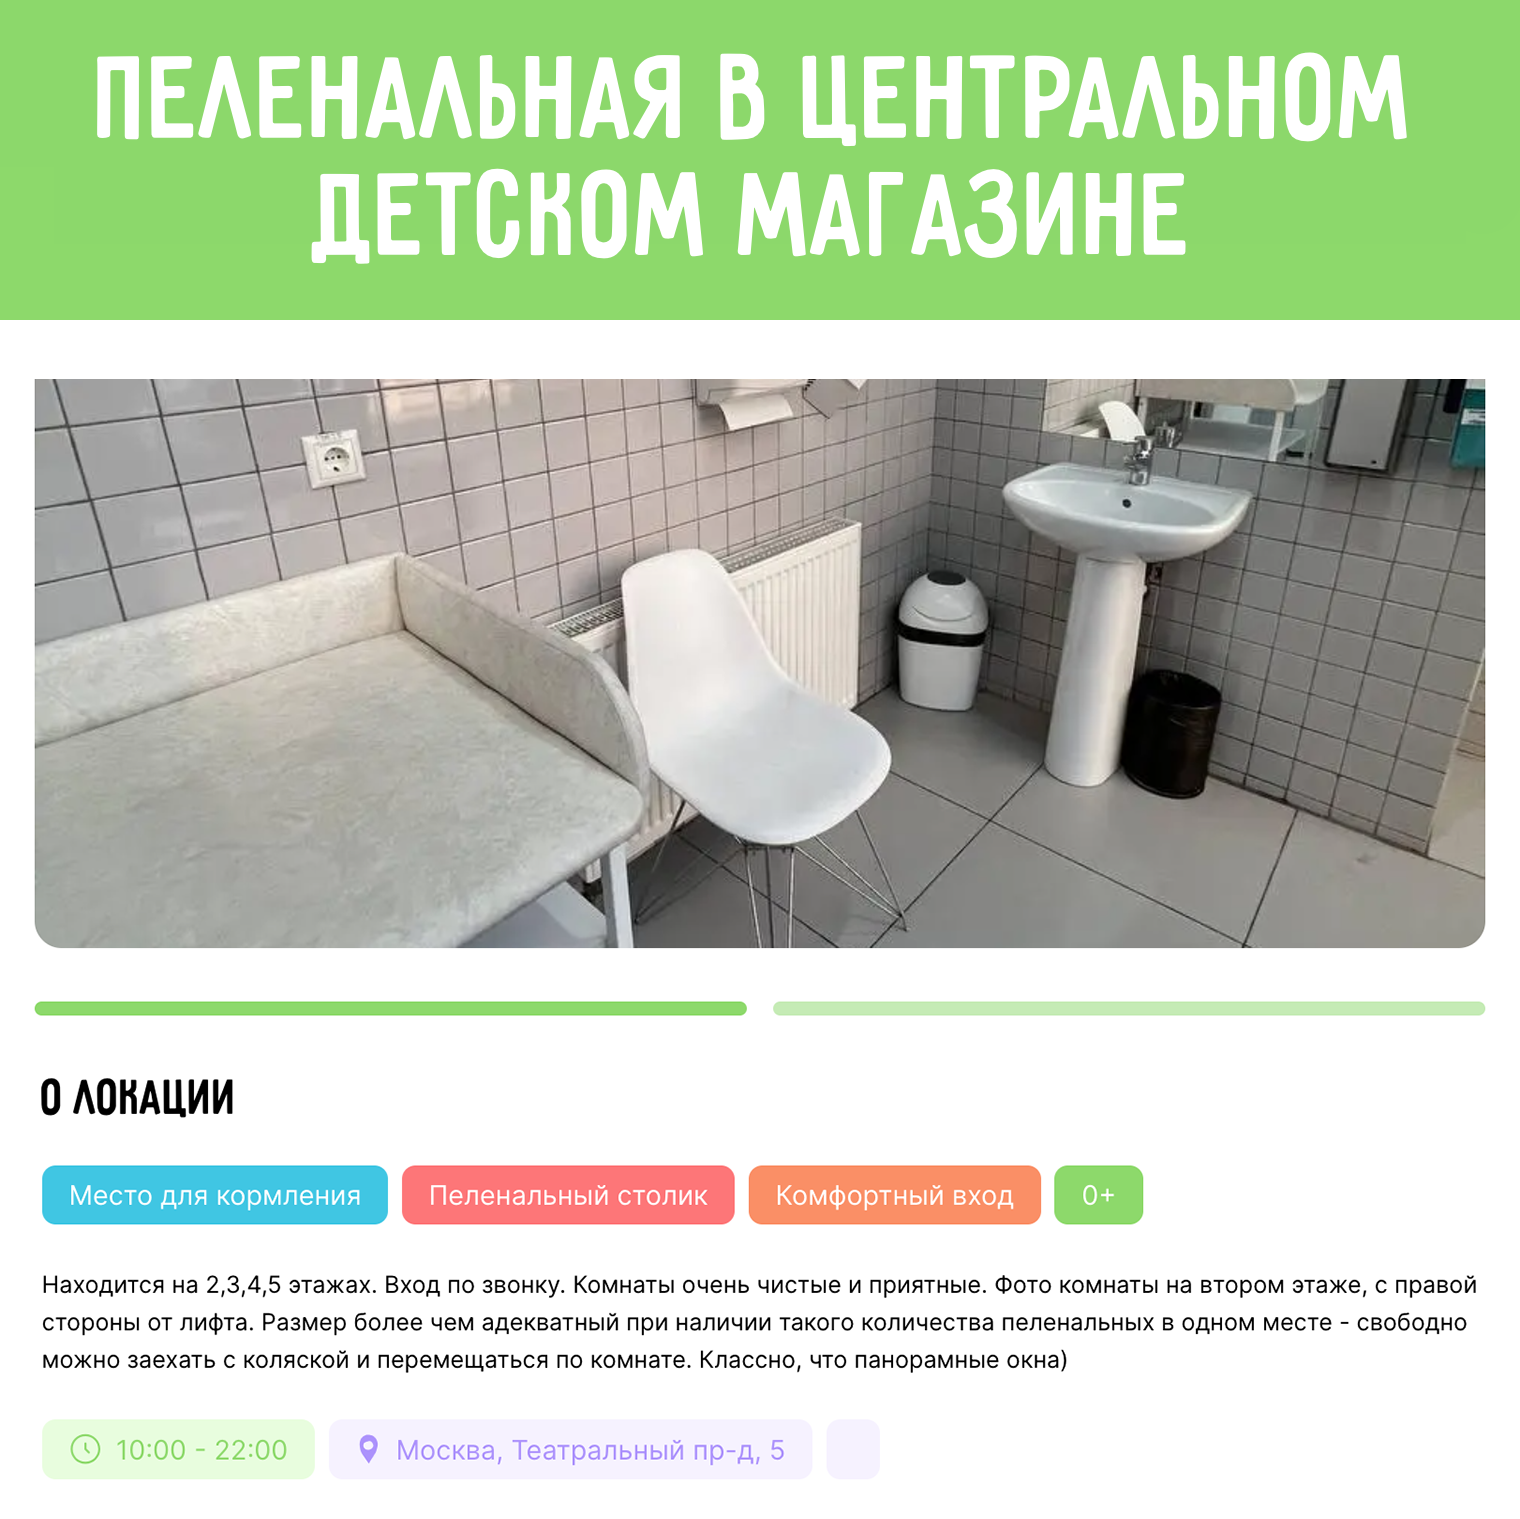 Так выглядит дополнительная информация о локации по кнопке «Узнать больше». Источник: kidsfriendlycity.ru